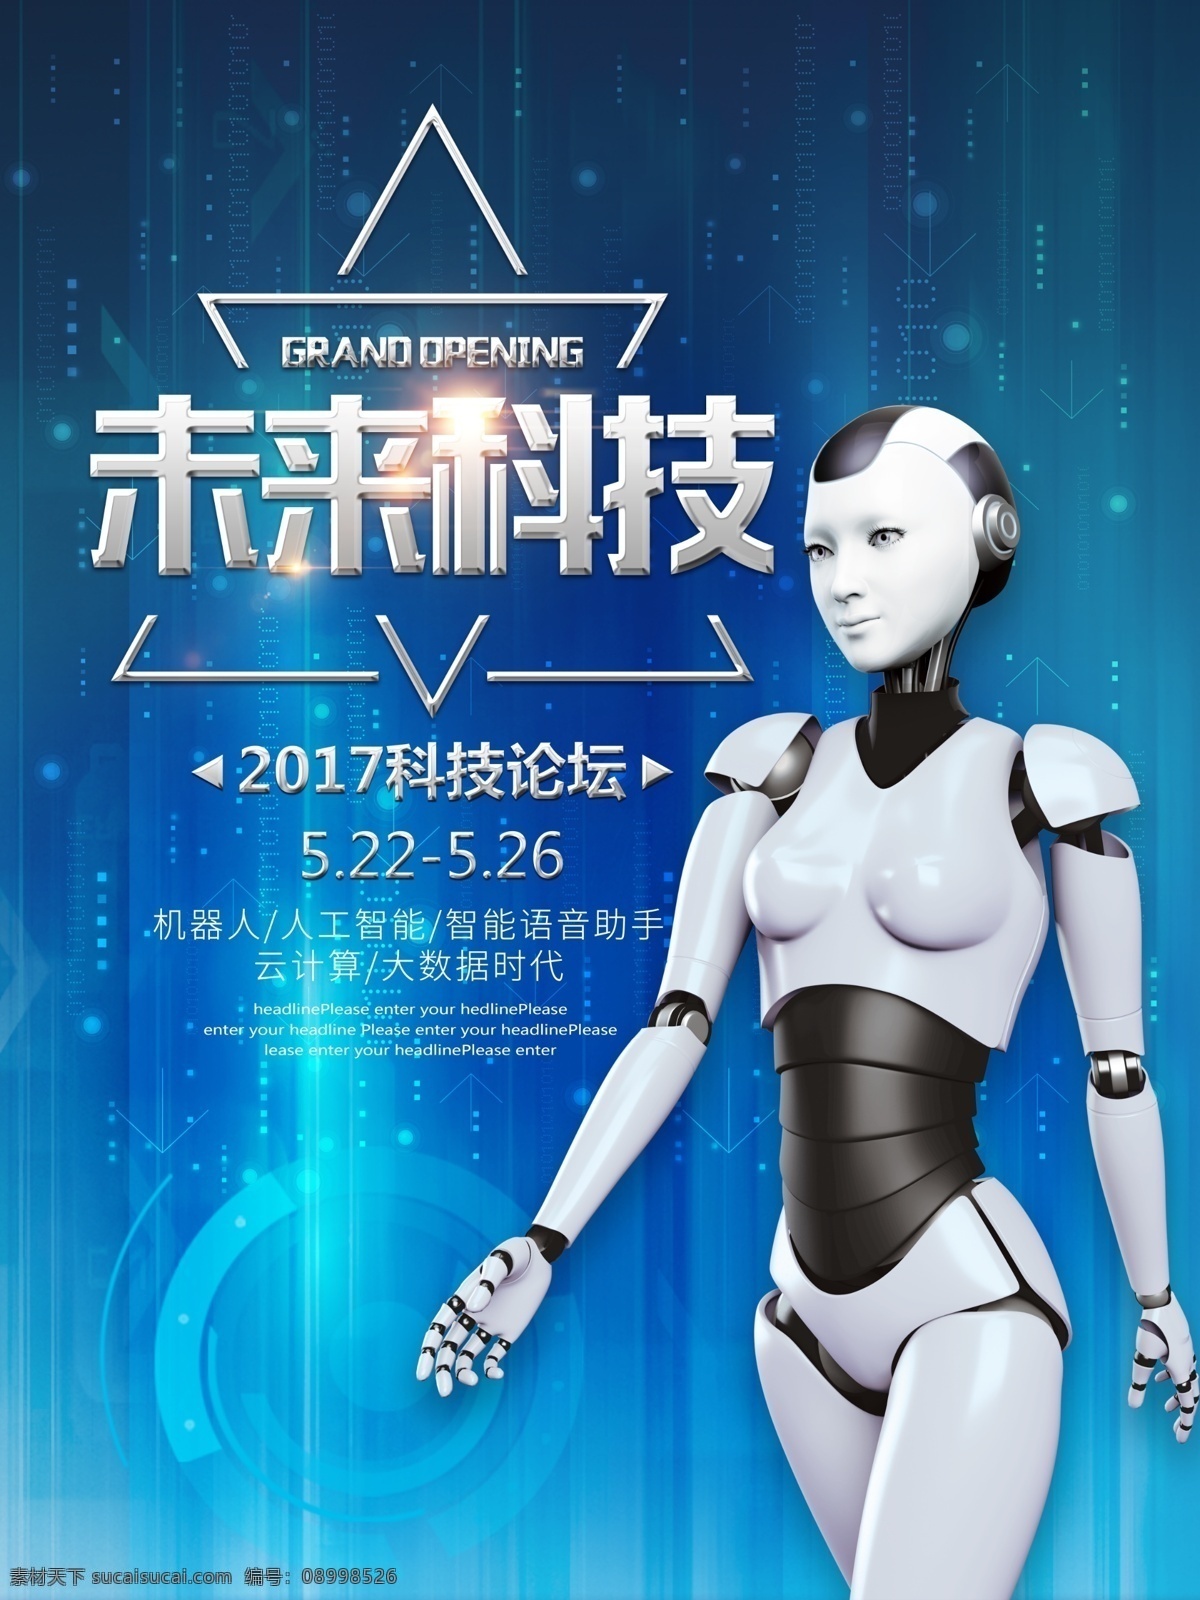 未来 科技 论坛 宣传海报 未来科技 科技论坛 科技展 科技宣传 人工智能 智能科技 智能机器人 机器人 大数据 云计算 智能助手 蓝色科技